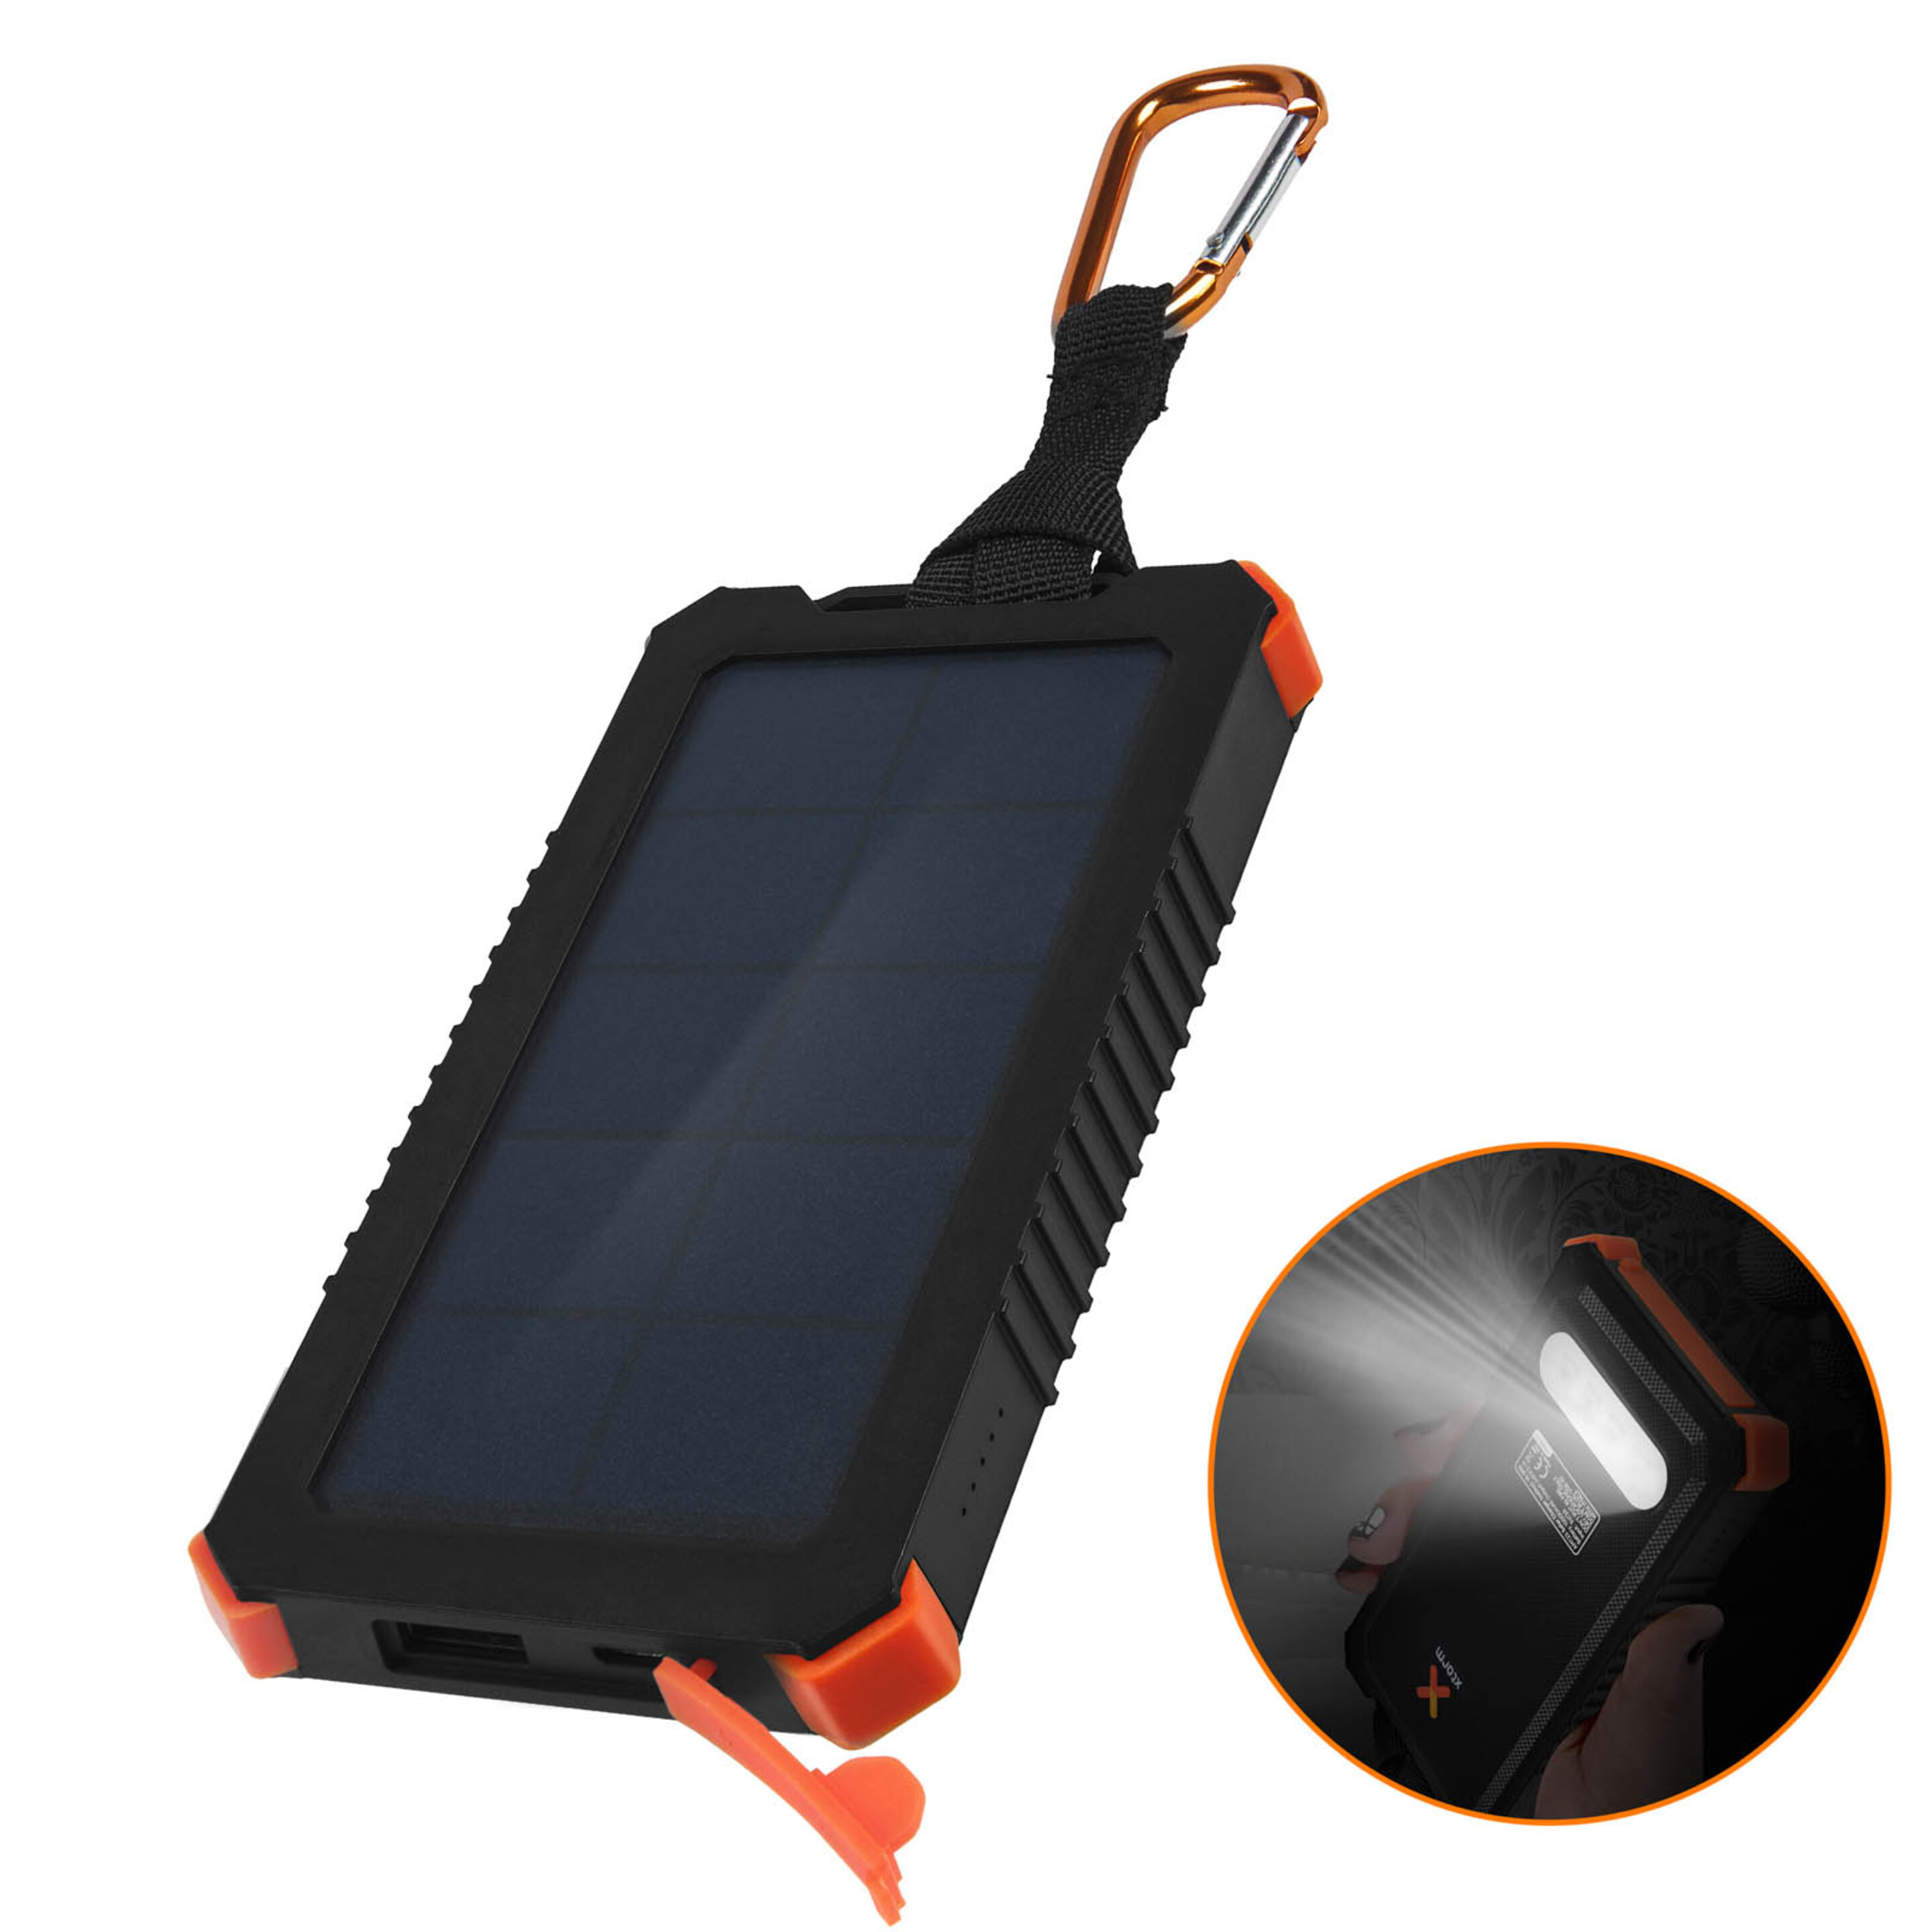 Batería Solar Usb 2,1a 5000mah Ipx4 Resistente A Los Impactos Xtorm Impulse